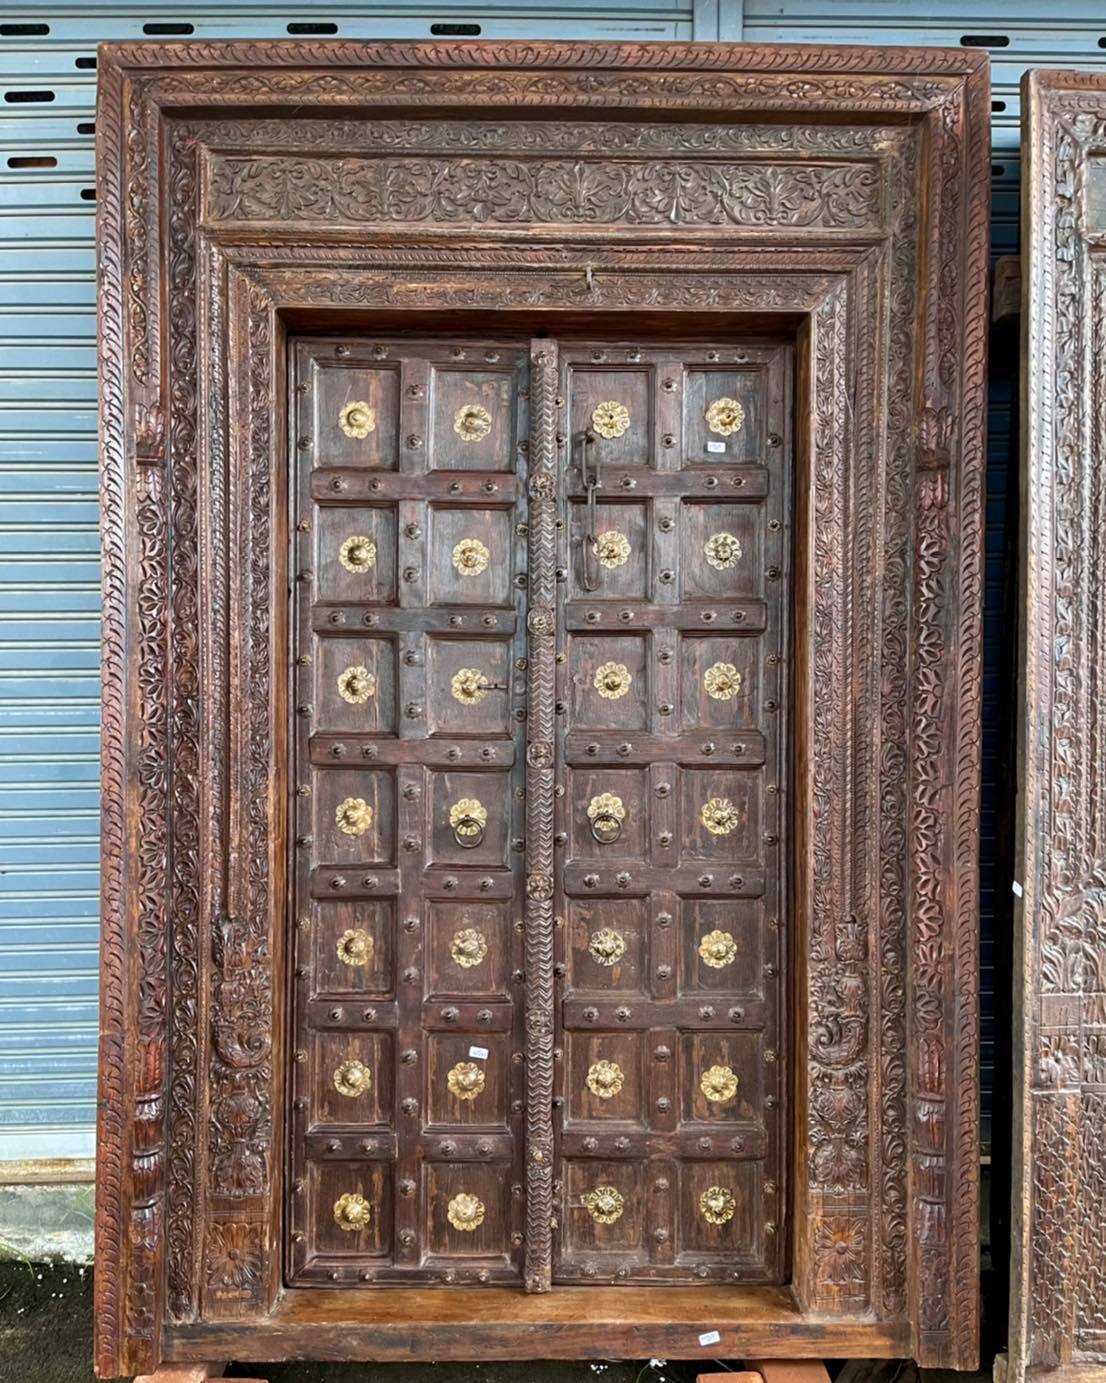 XL61 ประตูอินเดียบานใหญ่แต่งดอกไม้ทองเหลือง